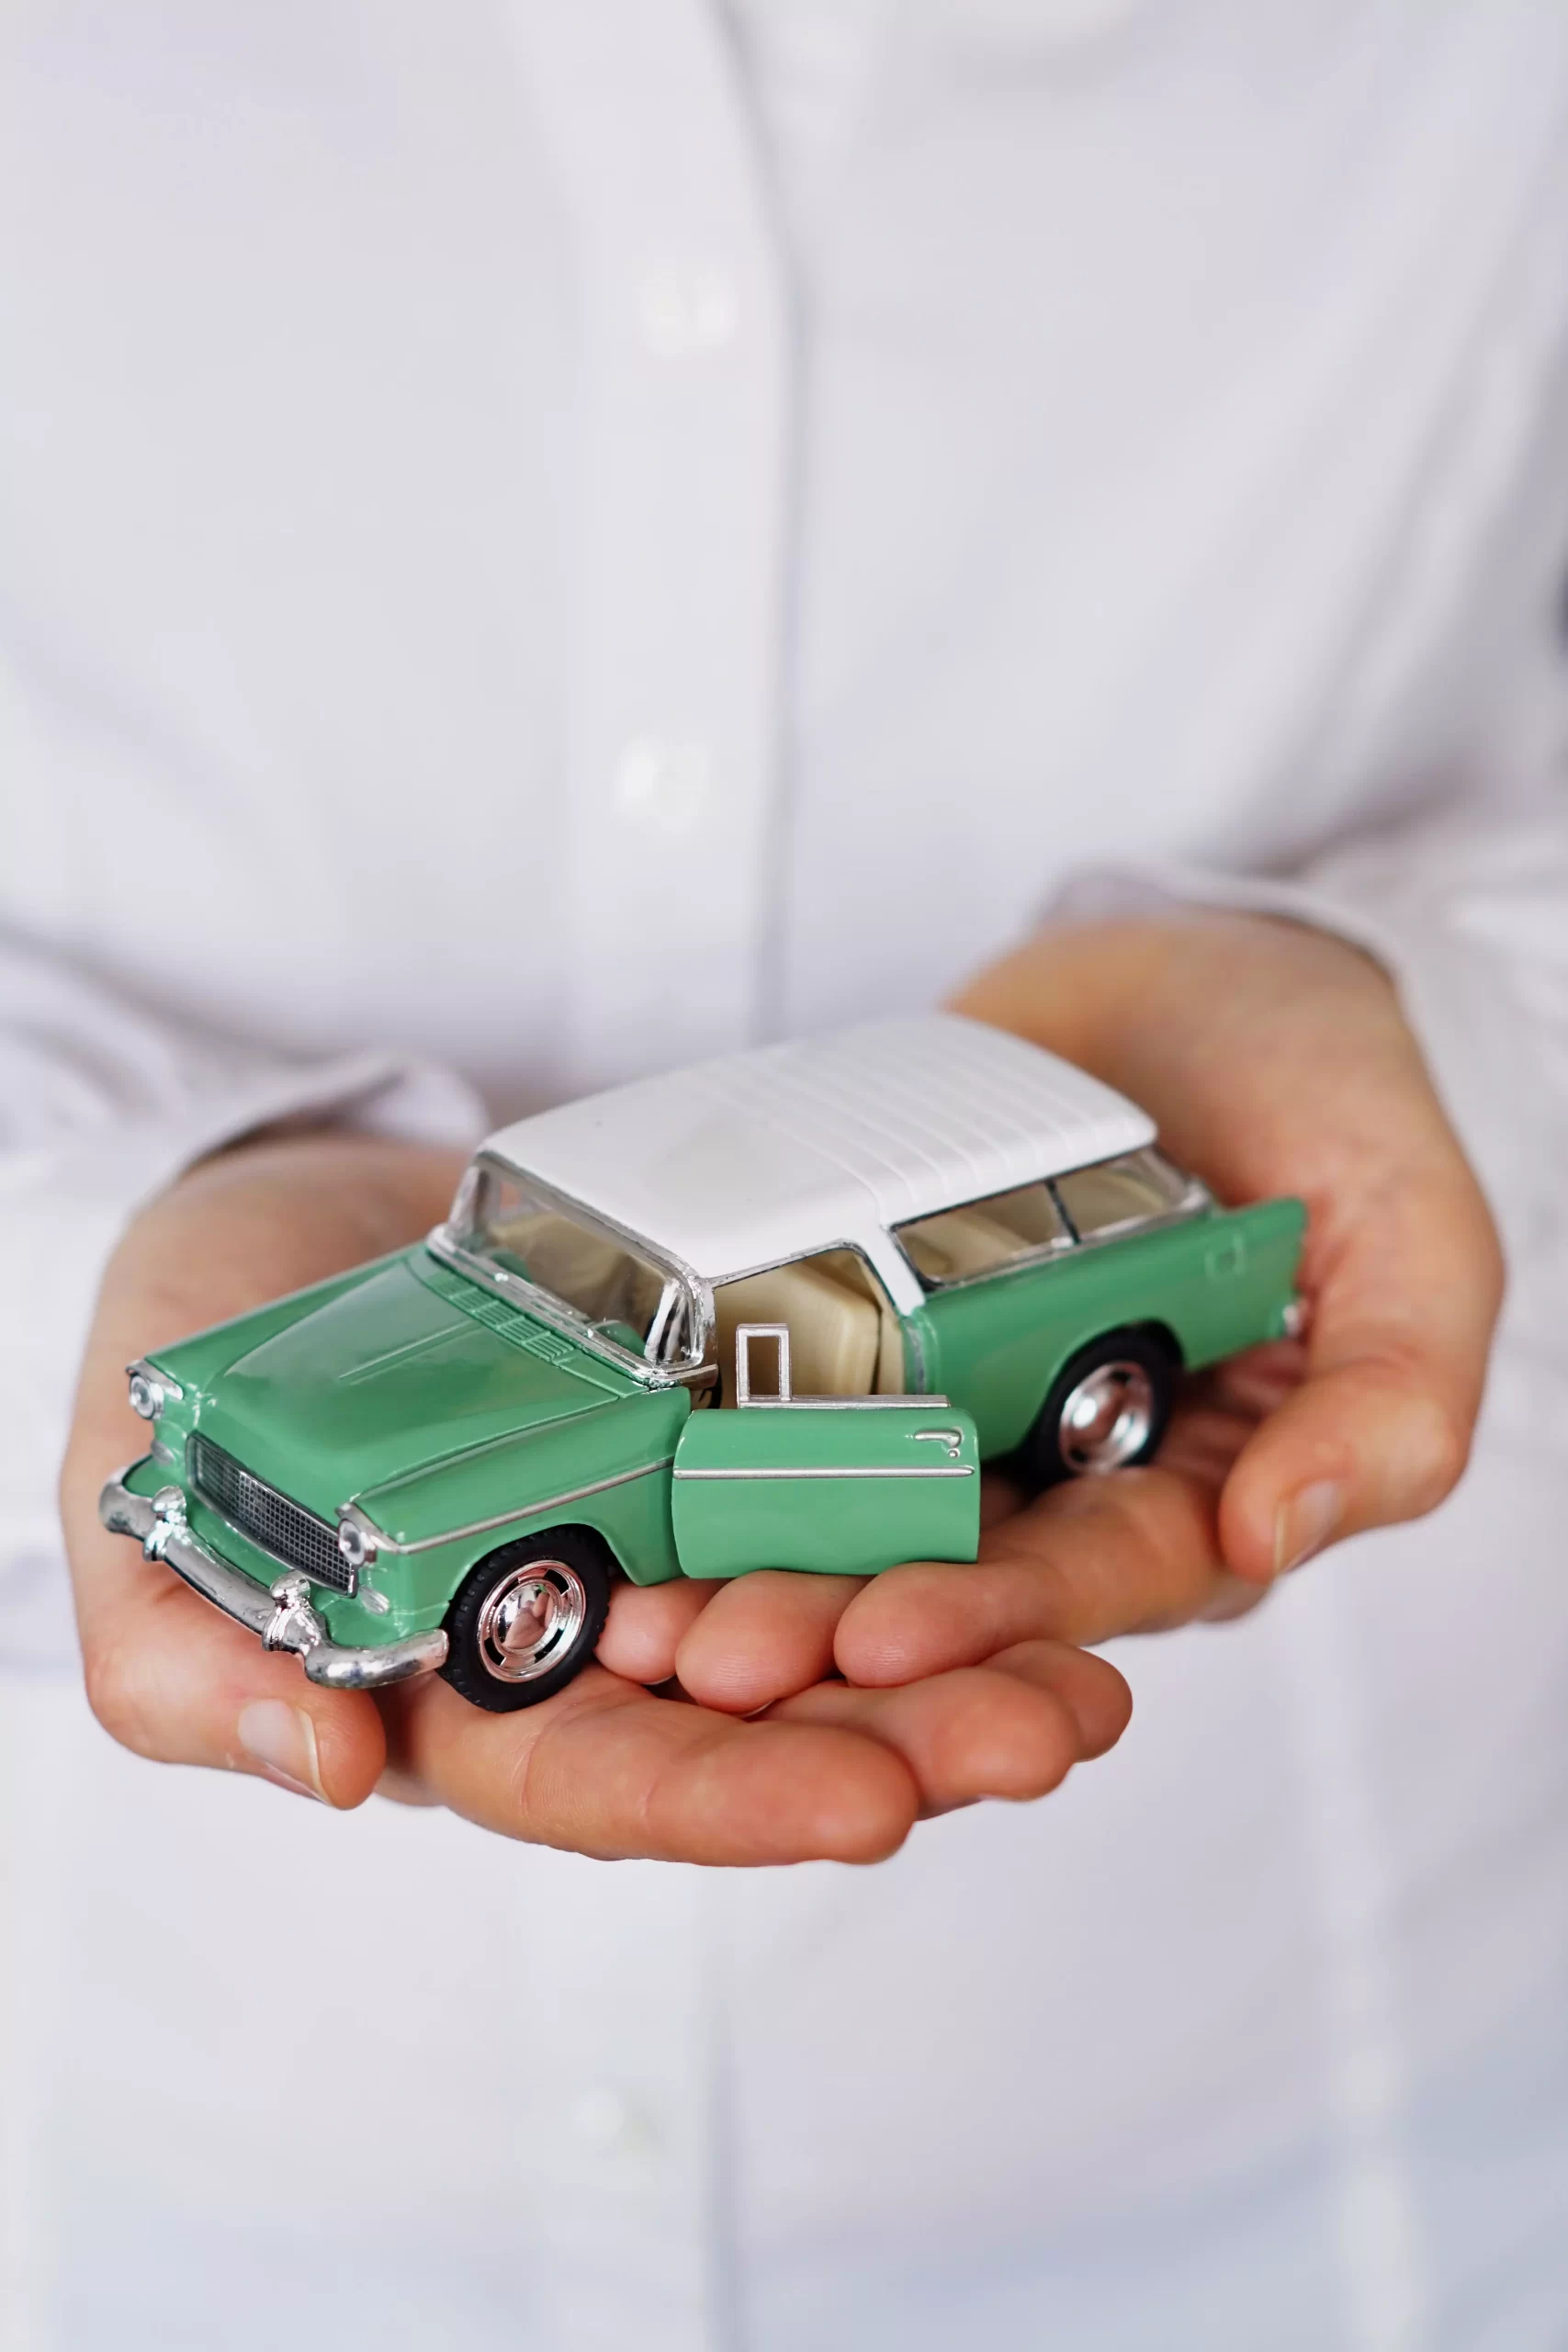 Colecionando miniaturas de carros: as melhores opções em escala 1:18